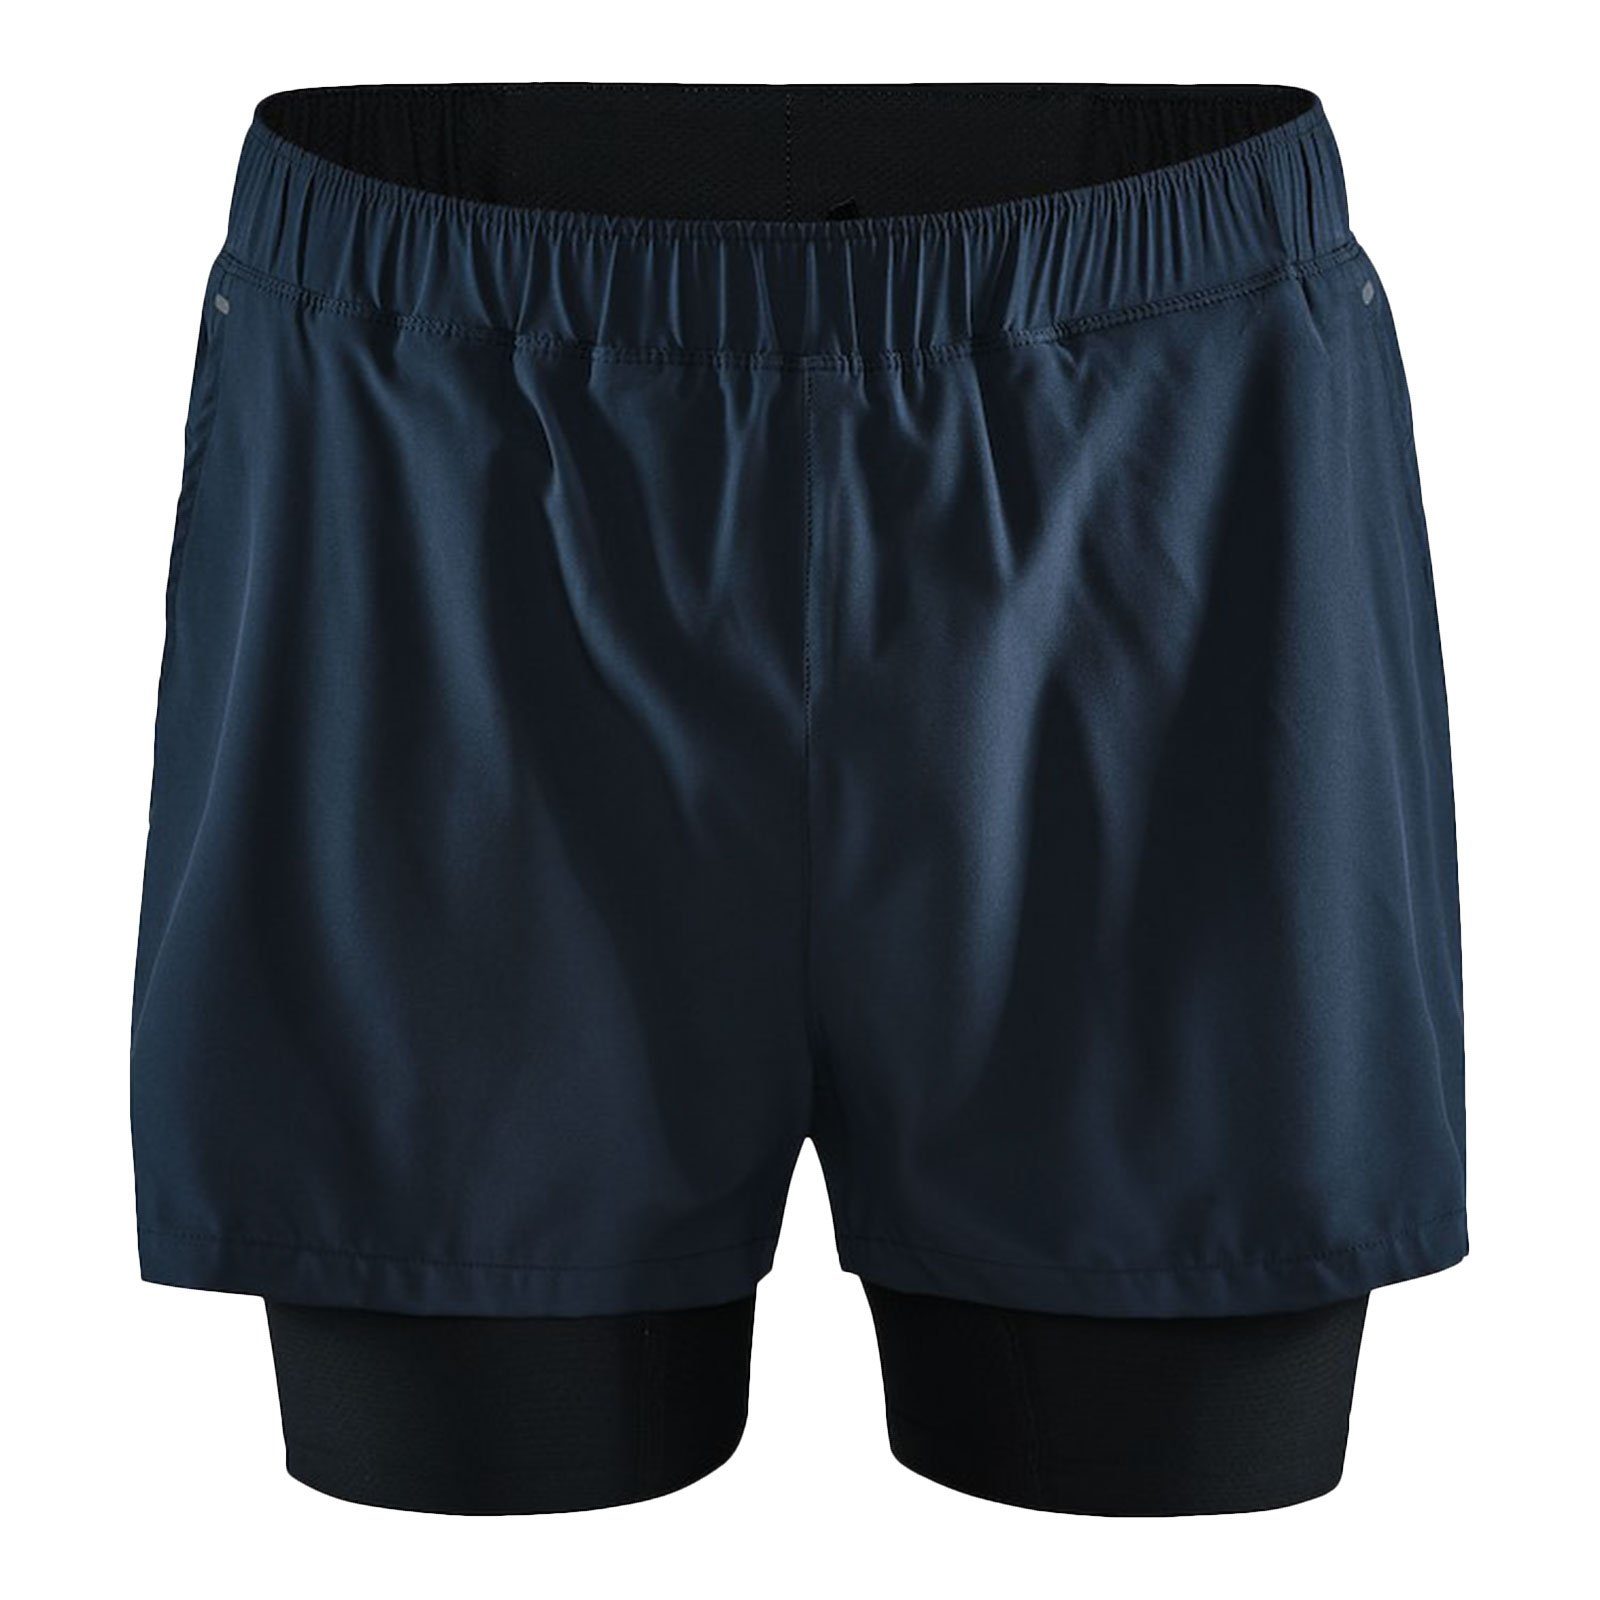 Craft Laufhose Essence ADV 2-in-1 Stretch Shorts mit versteckter Tasche am Bund 396000 blaze